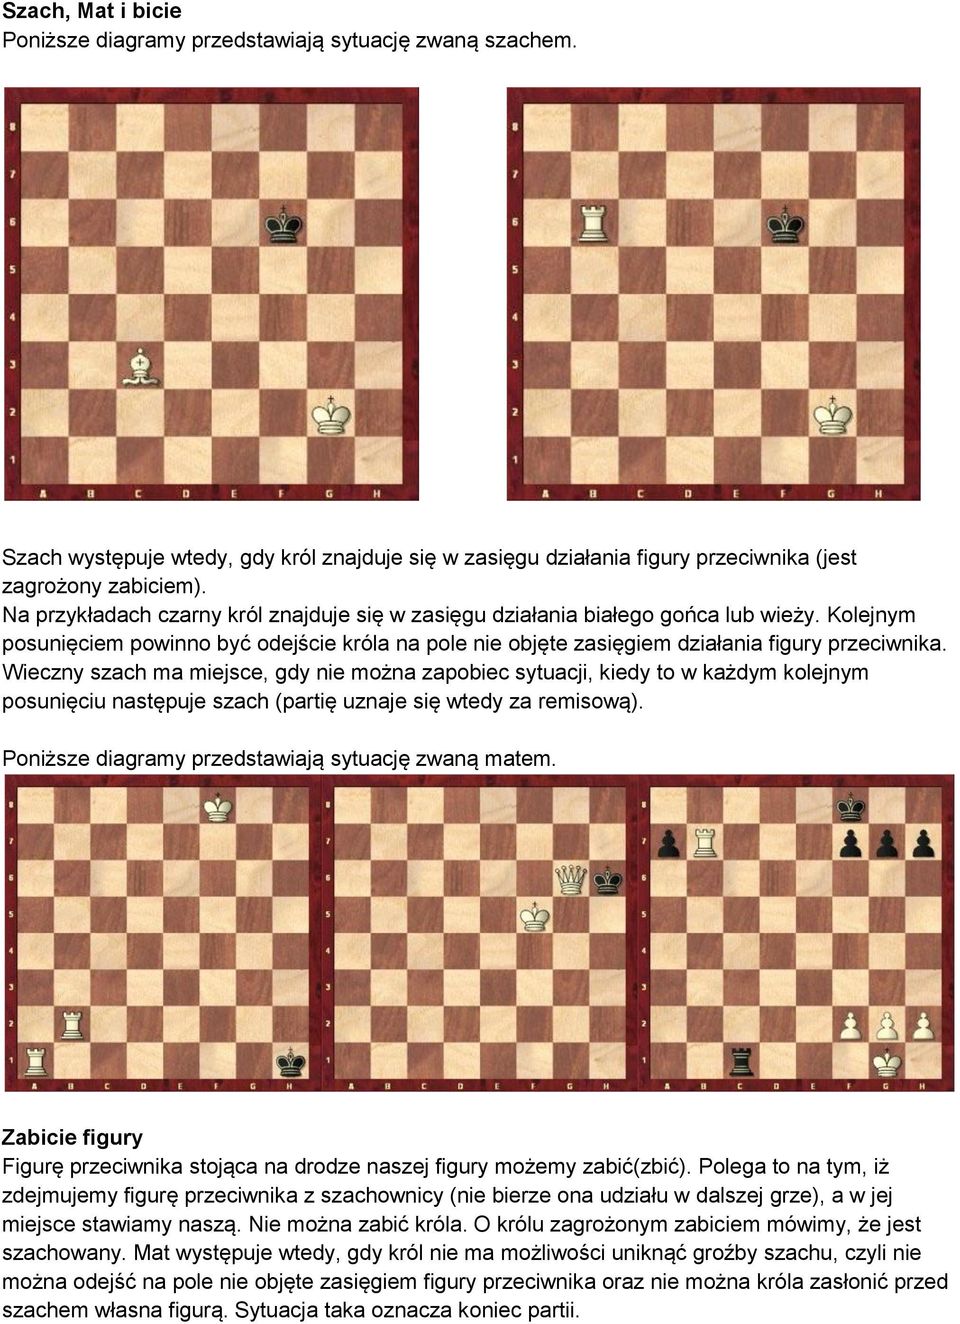 Wieczny szach ma miejsce, gdy nie można zapobiec sytuacji, kiedy to w każdym kolejnym posunięciu następuje szach (partię uznaje się wtedy za remisową).